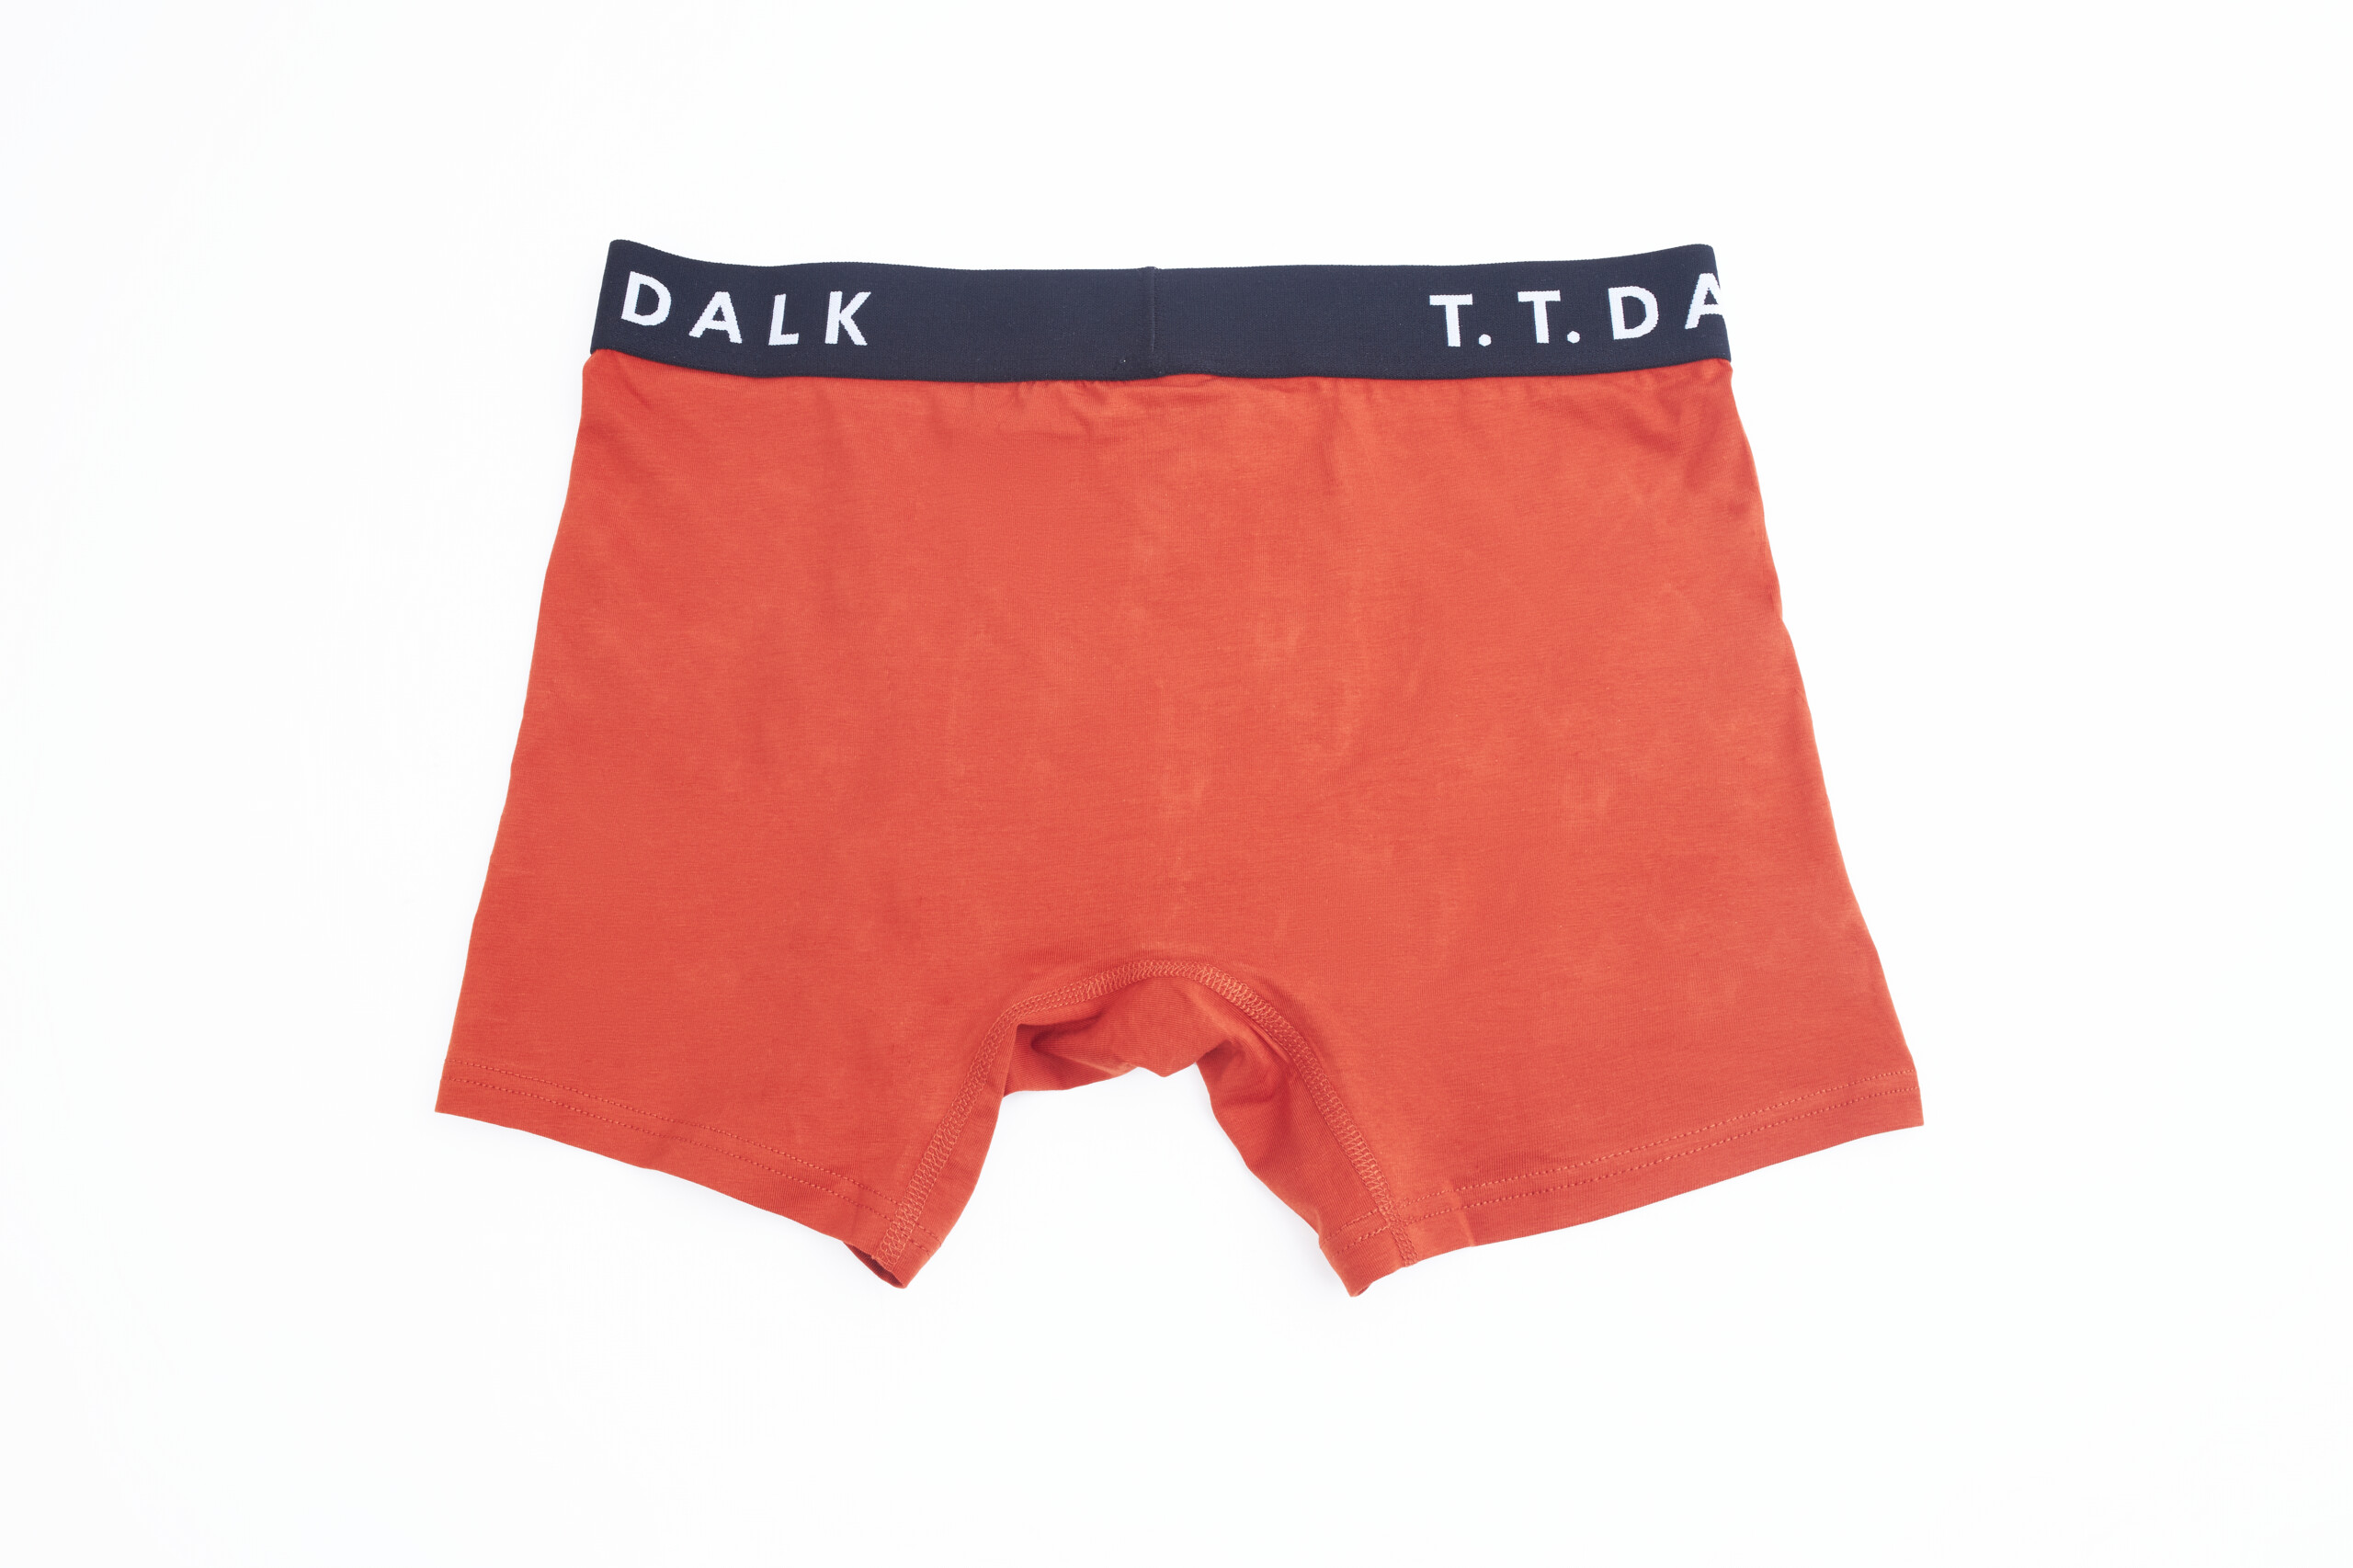 Black and Orange 2 in 1 Underwear - T.T.Dalk Nigeria